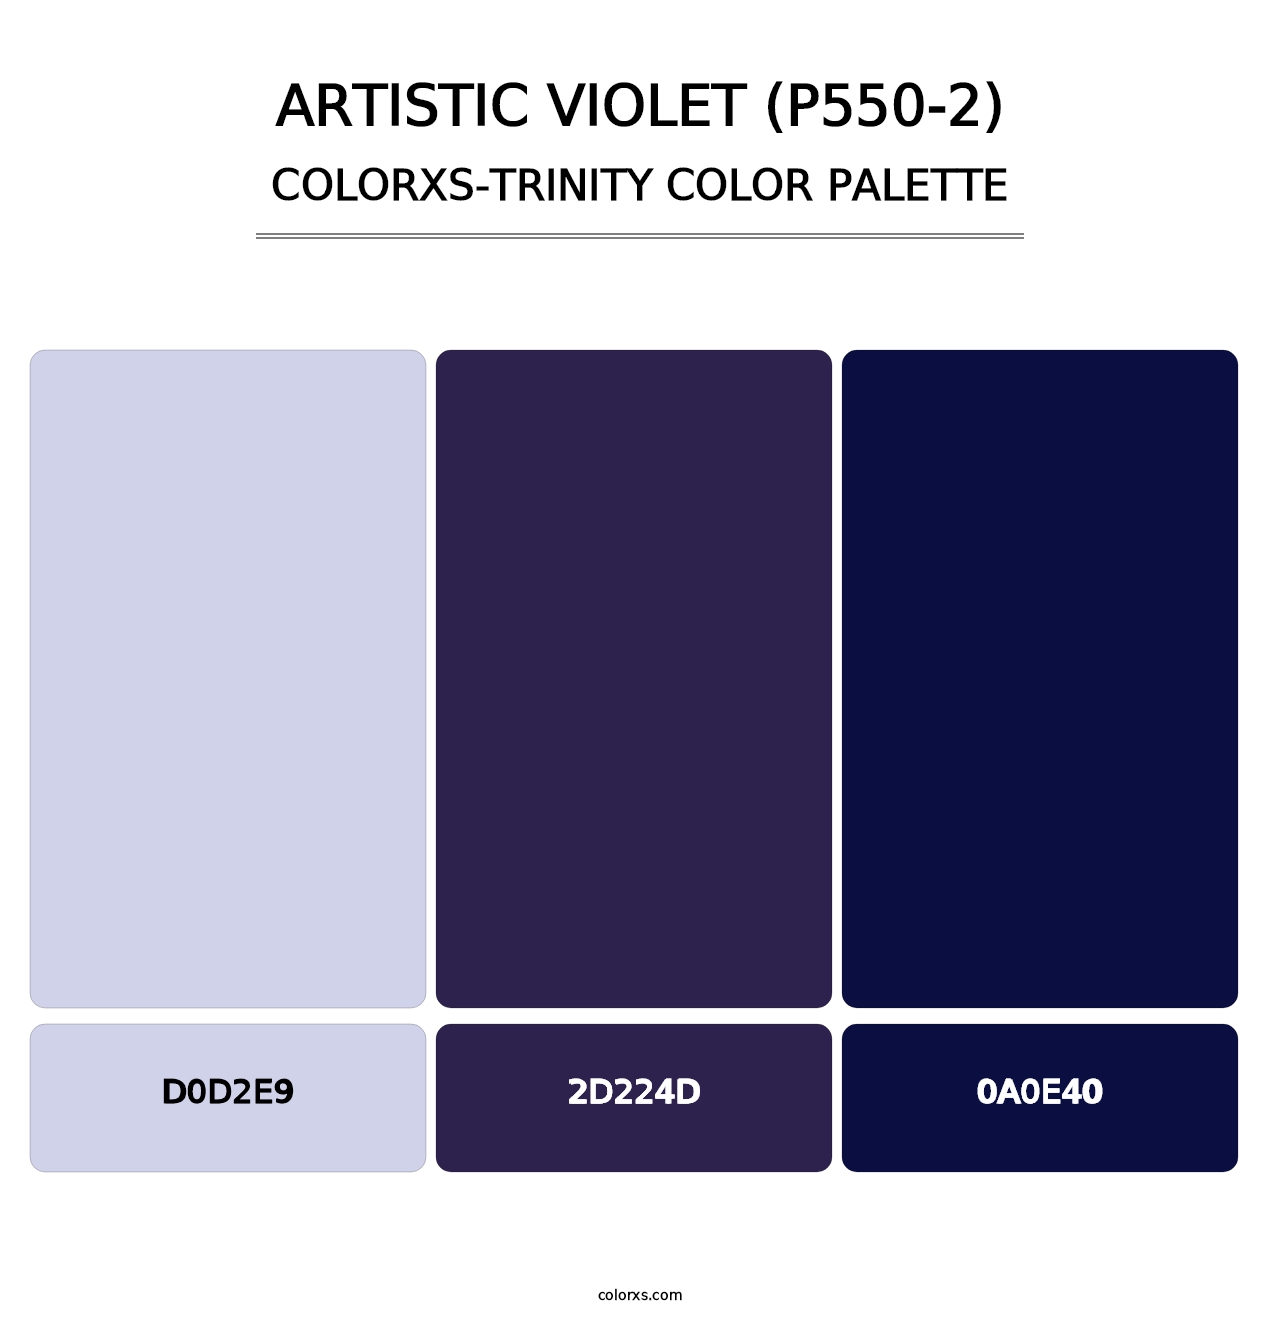 Artistic Violet (P550-2) - Colorxs Trinity Palette